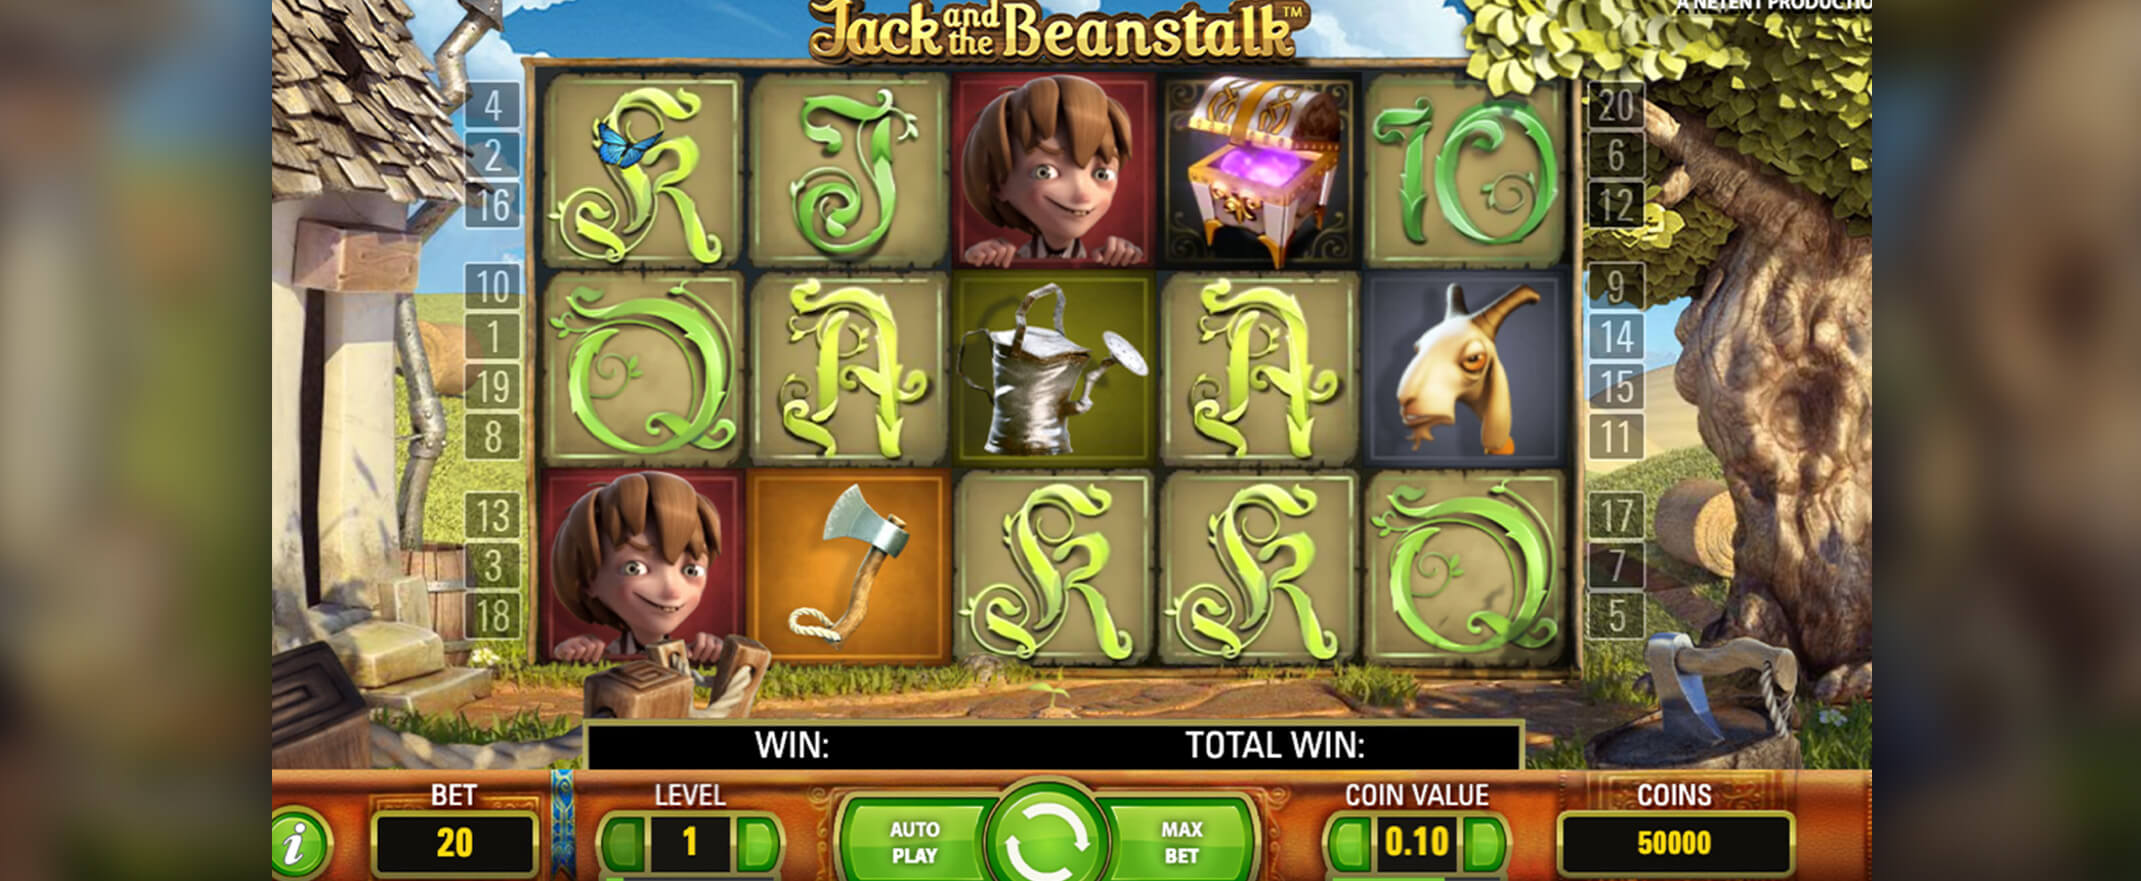 Jack and the Beanstalk Spielautomat von NetEnt